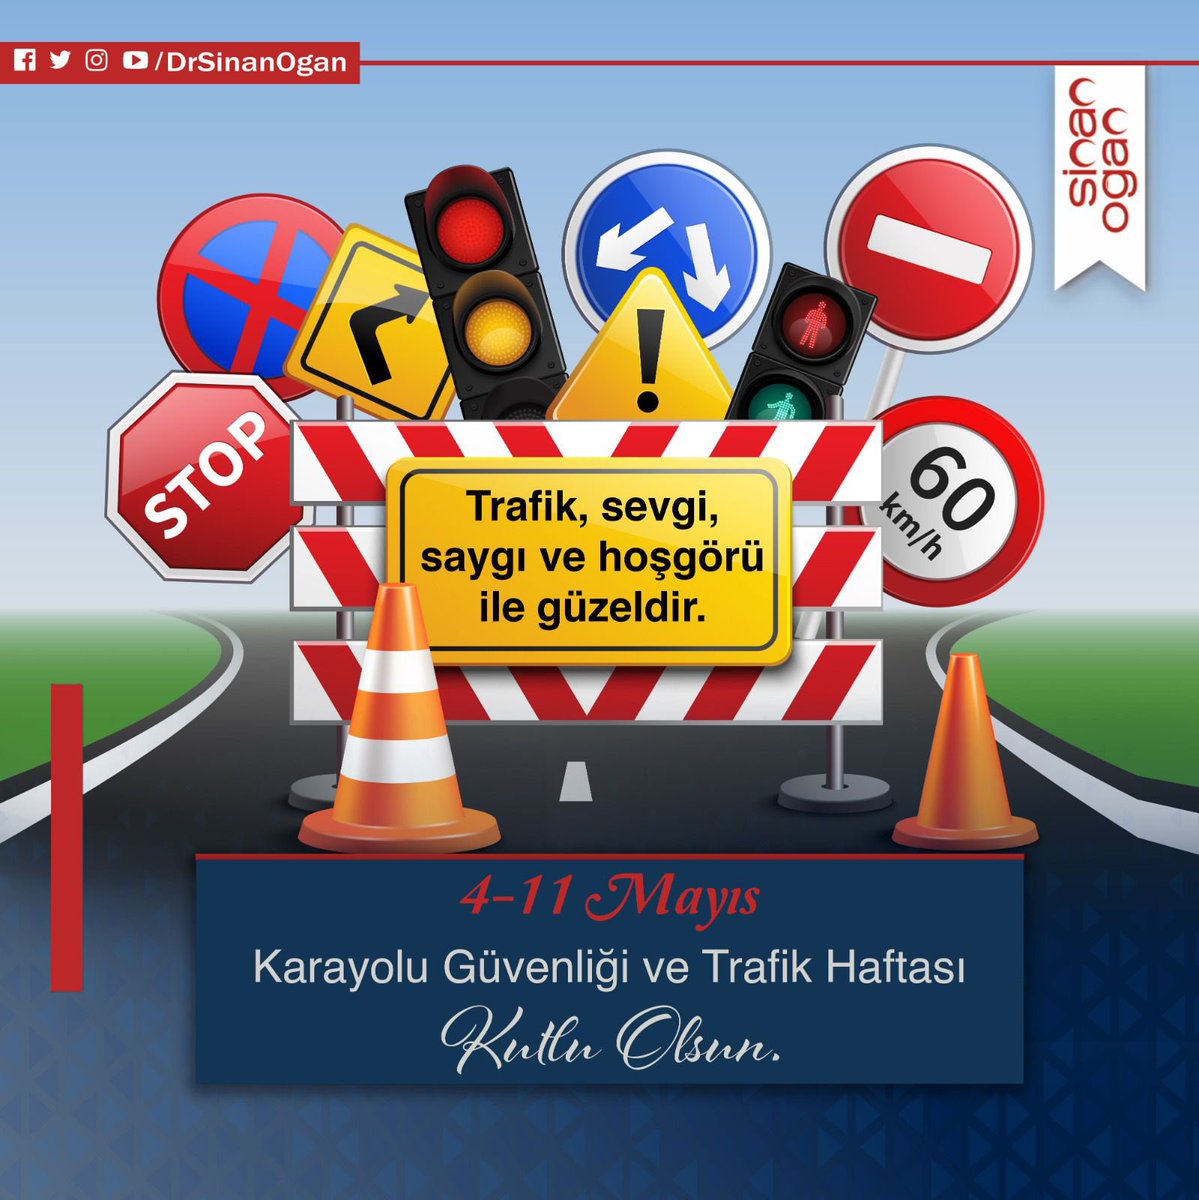 Trafik, sevgi, saygı ve hoşgörü ile güzeldir. 🚦 1-7 Mayıs Karayolu Trafik Güvenliği Günü ve Karayolu Trafik Haftası 
🚦🚔👮♂👮♀ #KemerimHepAklımda  #HerYılDahaİyiye #TrafikHaftası  #KurallarAklımda